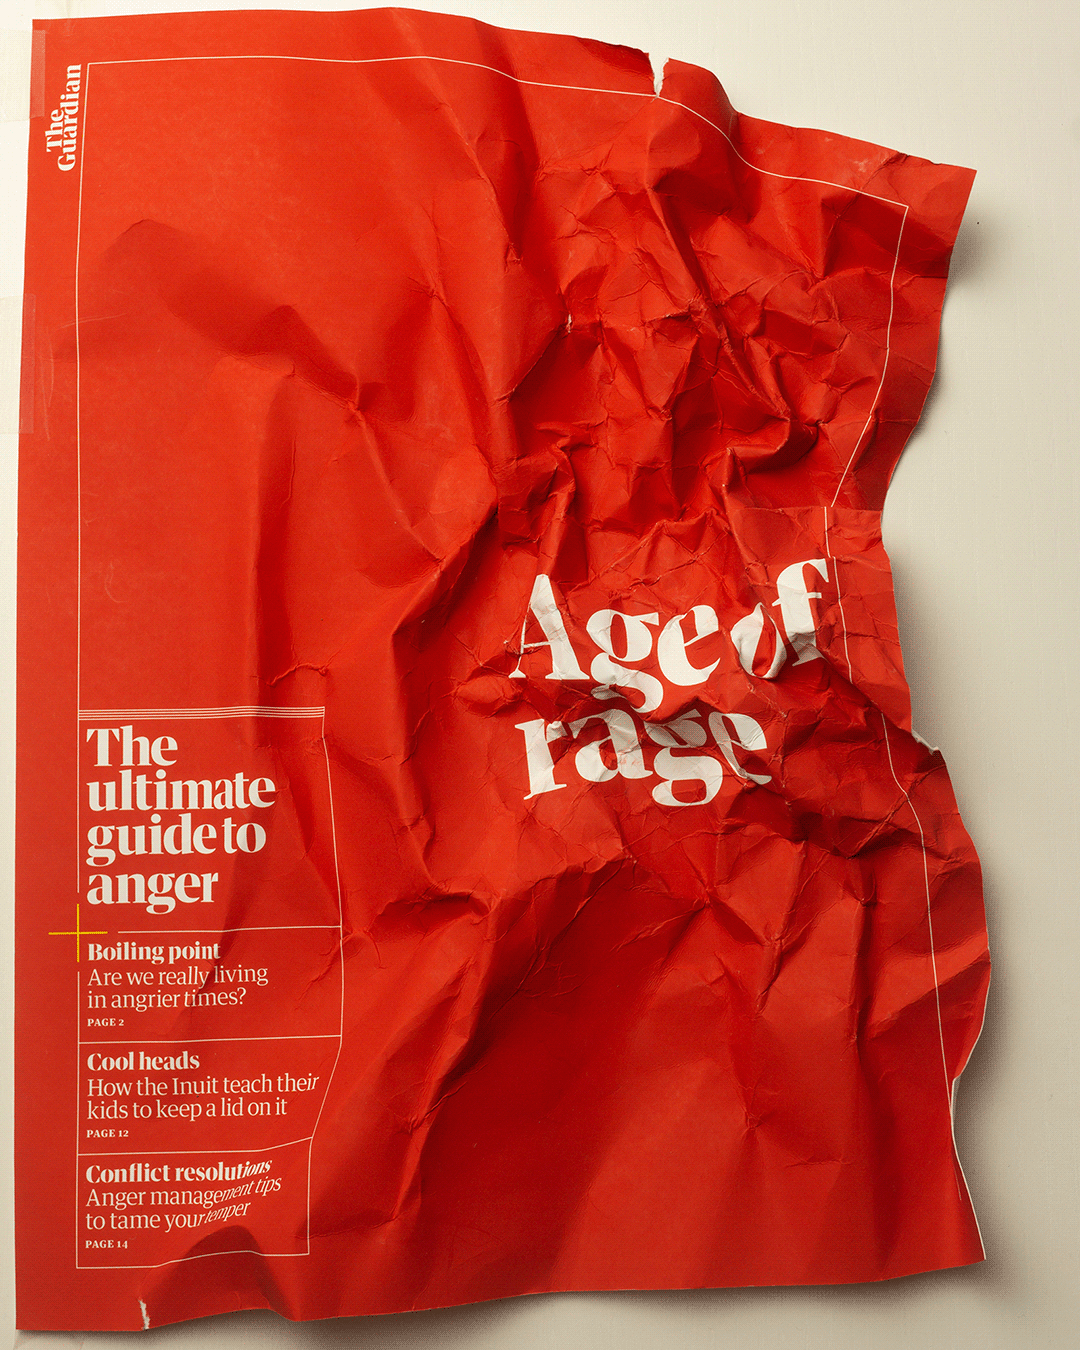 #StevenHeller Anger cover editorial magazine magazinecover newspaper newspapercover rage theGuardian